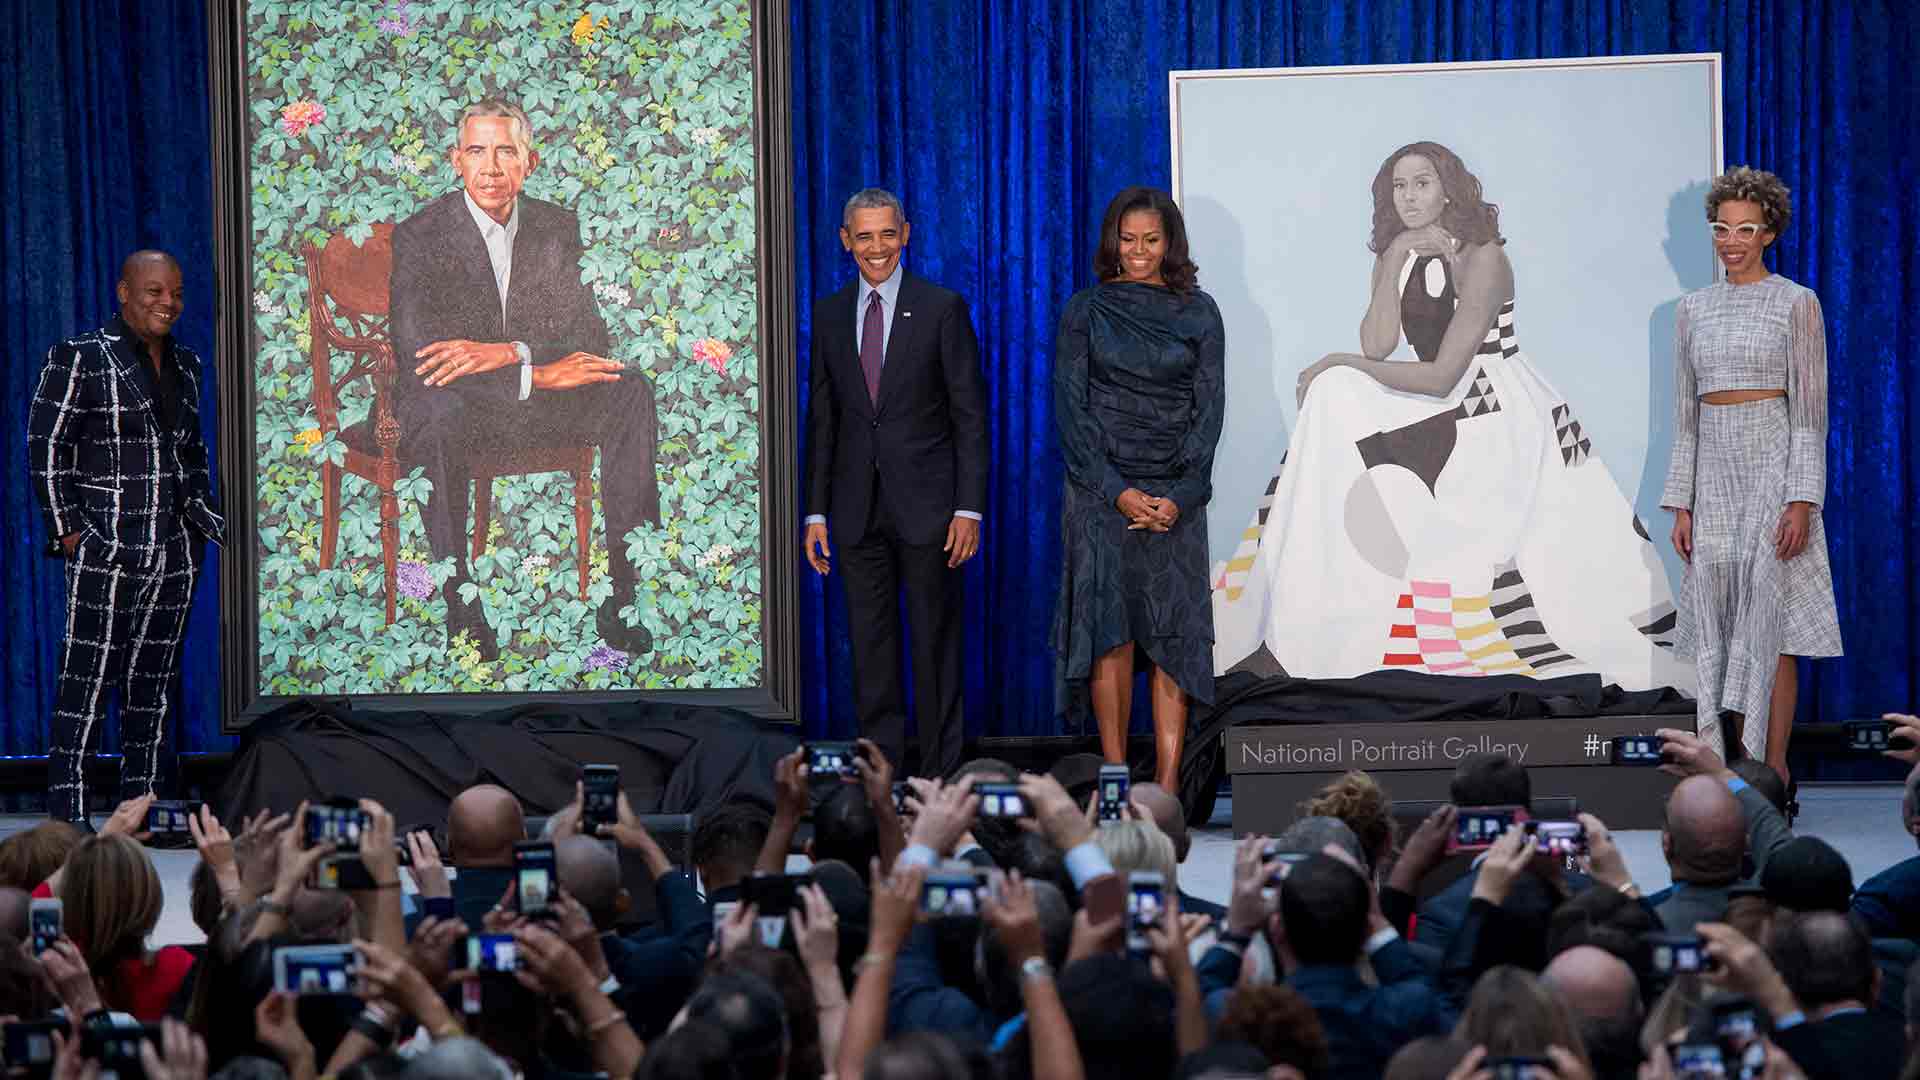 Desvelados los retratos oficiales de los Obama en la National Portrait Gallery